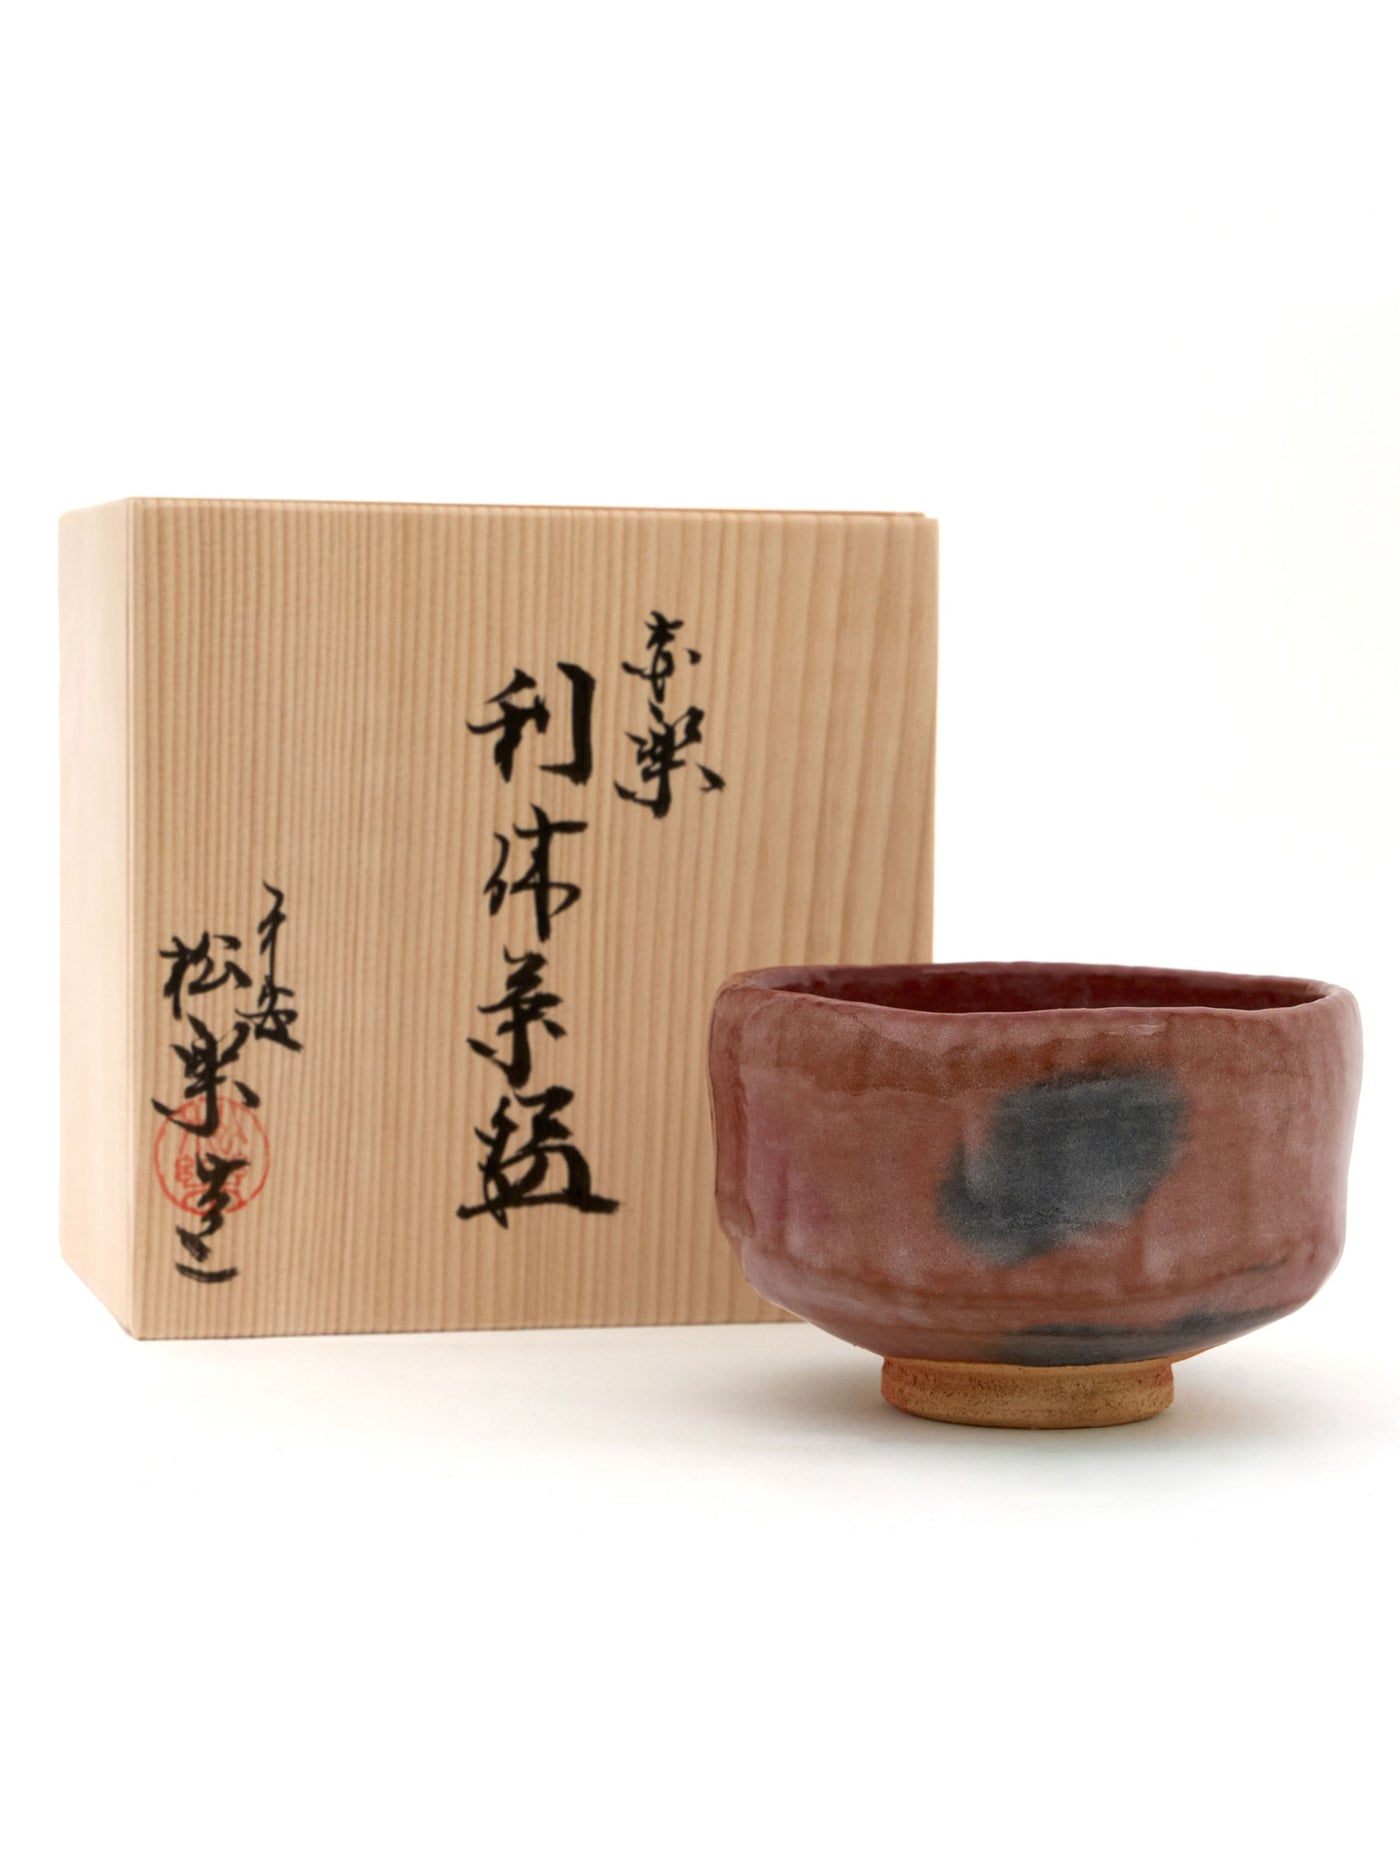 Red Raku Pottery Chawan Matcha Bowl by Shuraku